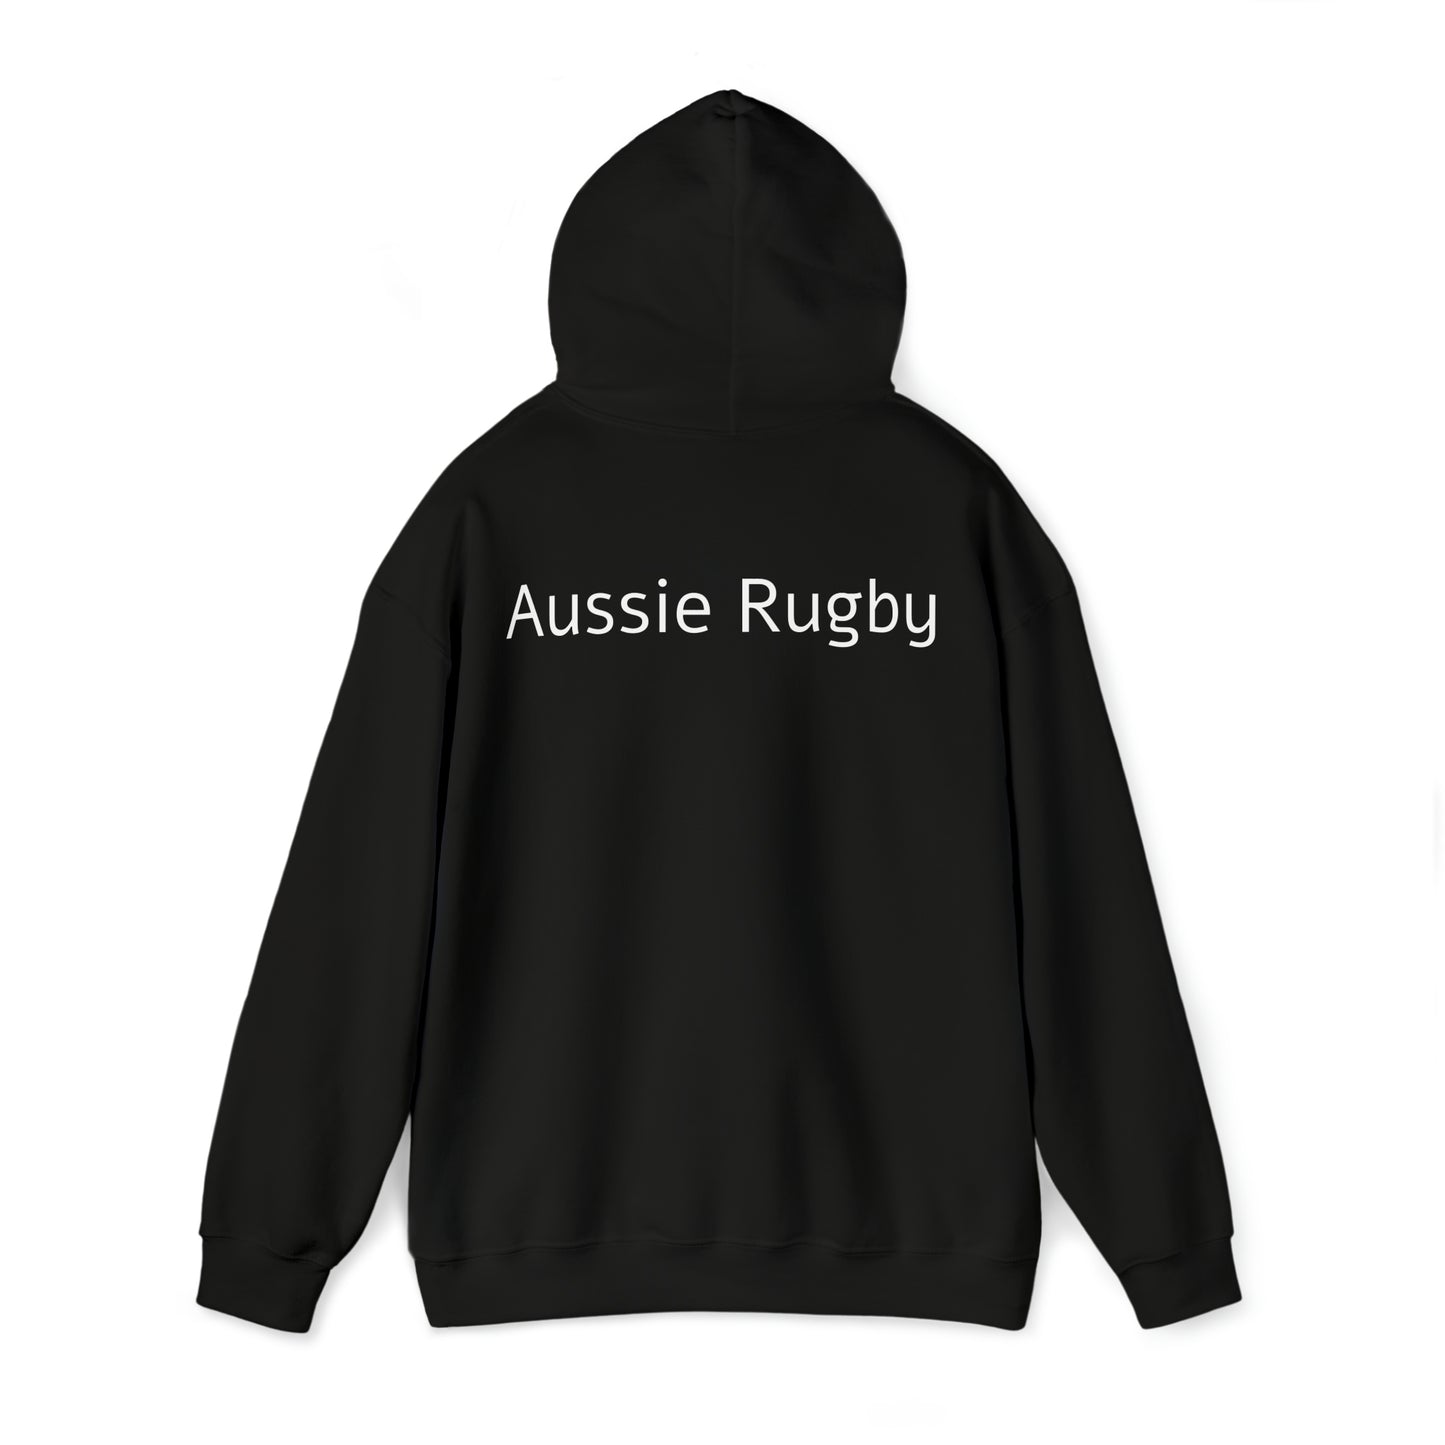 Ready Aussies - black hoodies